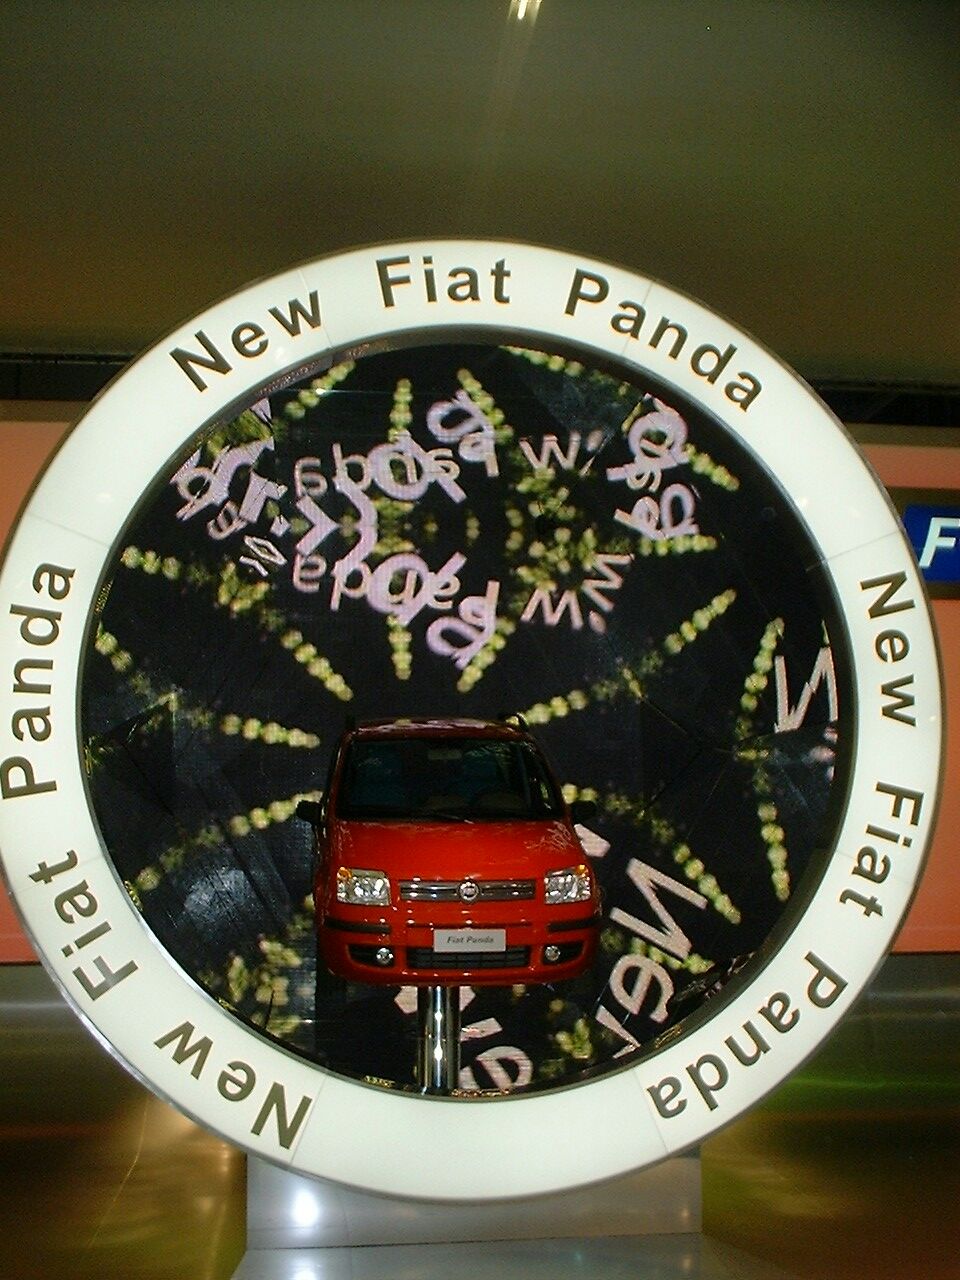 Fiat Panda at the 2003 Frankfurt IAA